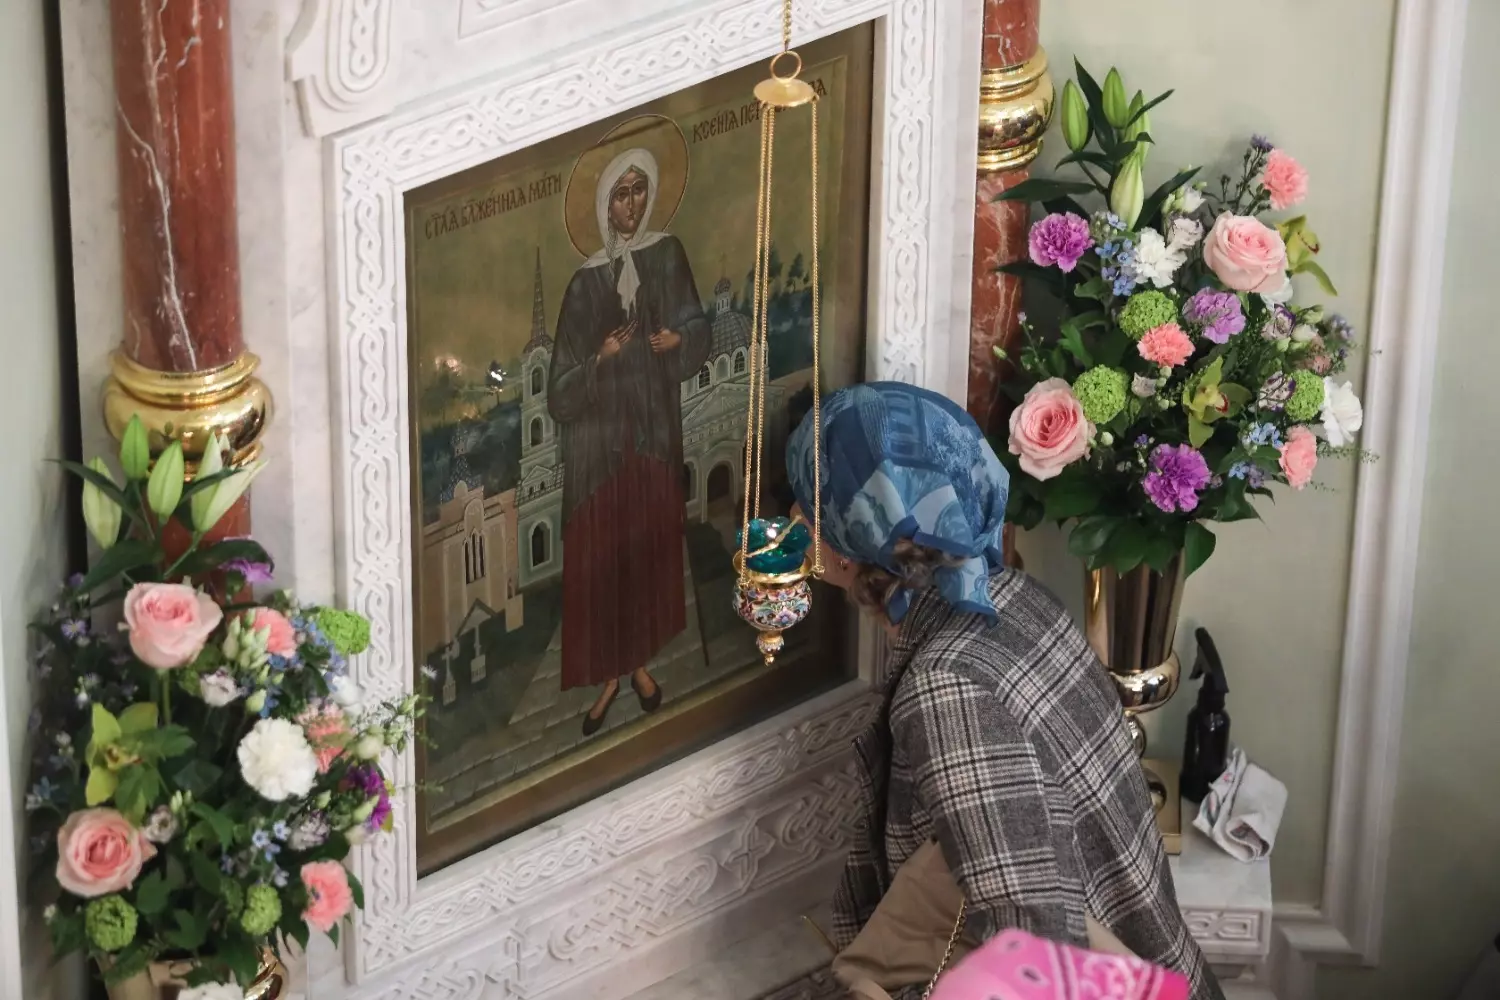 Почитание святой Ксении Петербургской началось еще при ее земной жизни, а после ее смерти — усилилось